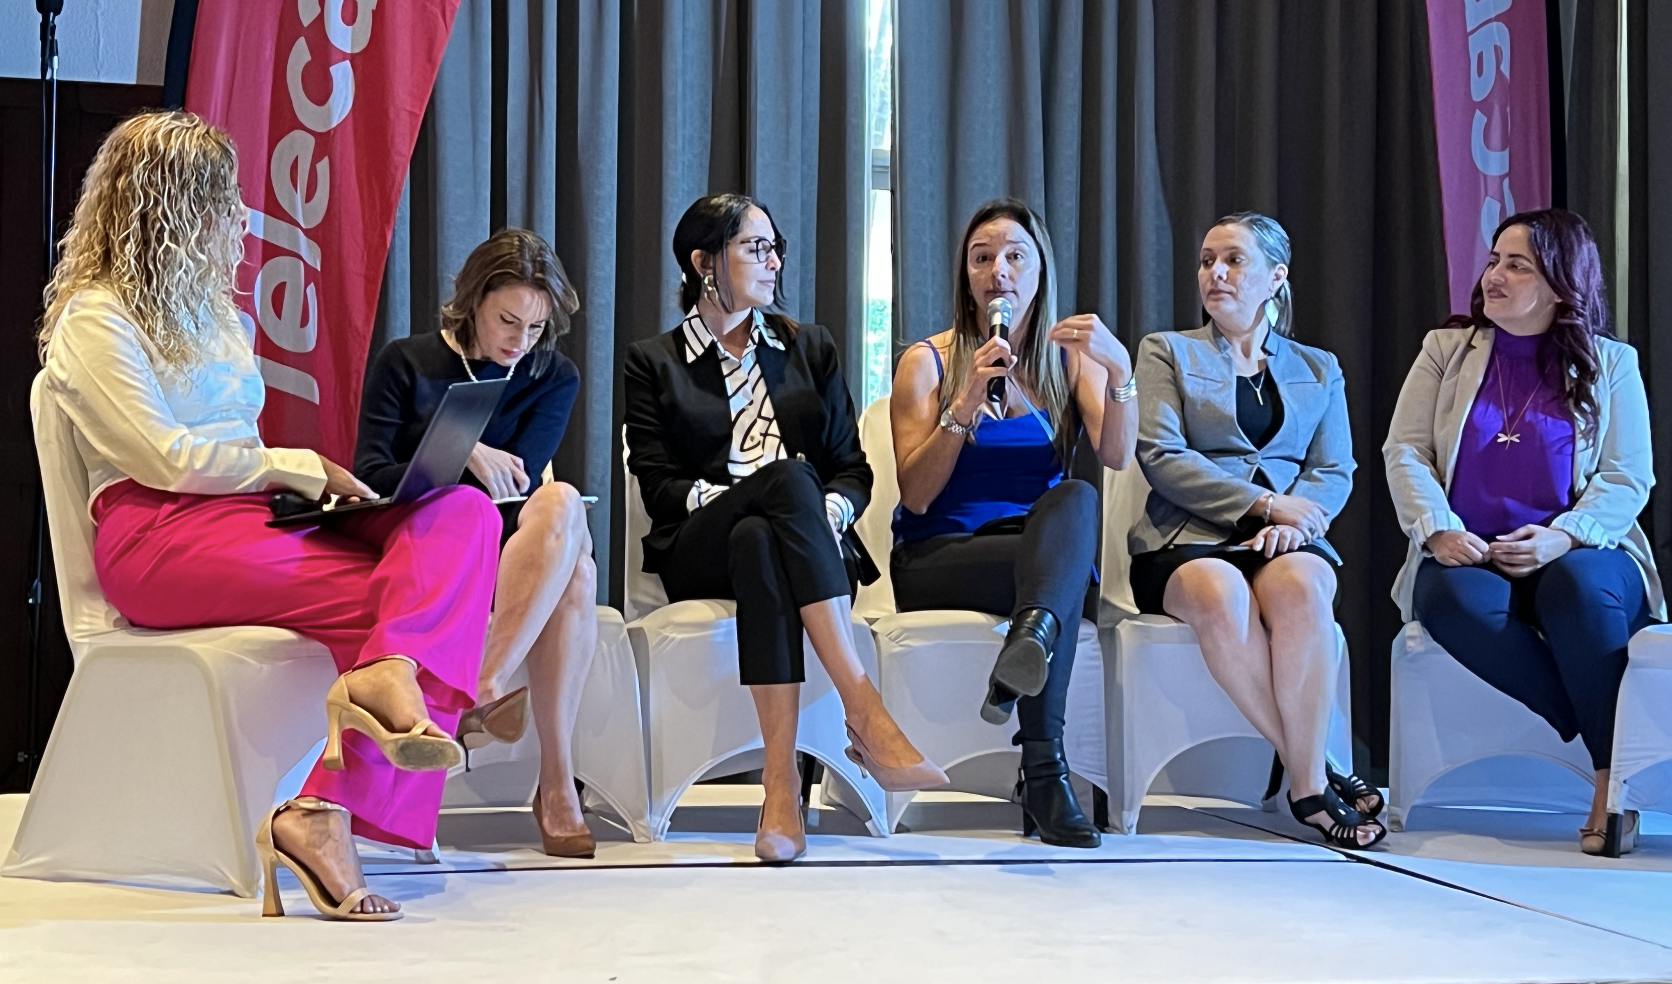 Panelistas sentadas en sillas blancas, moderadora más cinco panelistas, en el medio con el micrófono Rebeca Esquivel